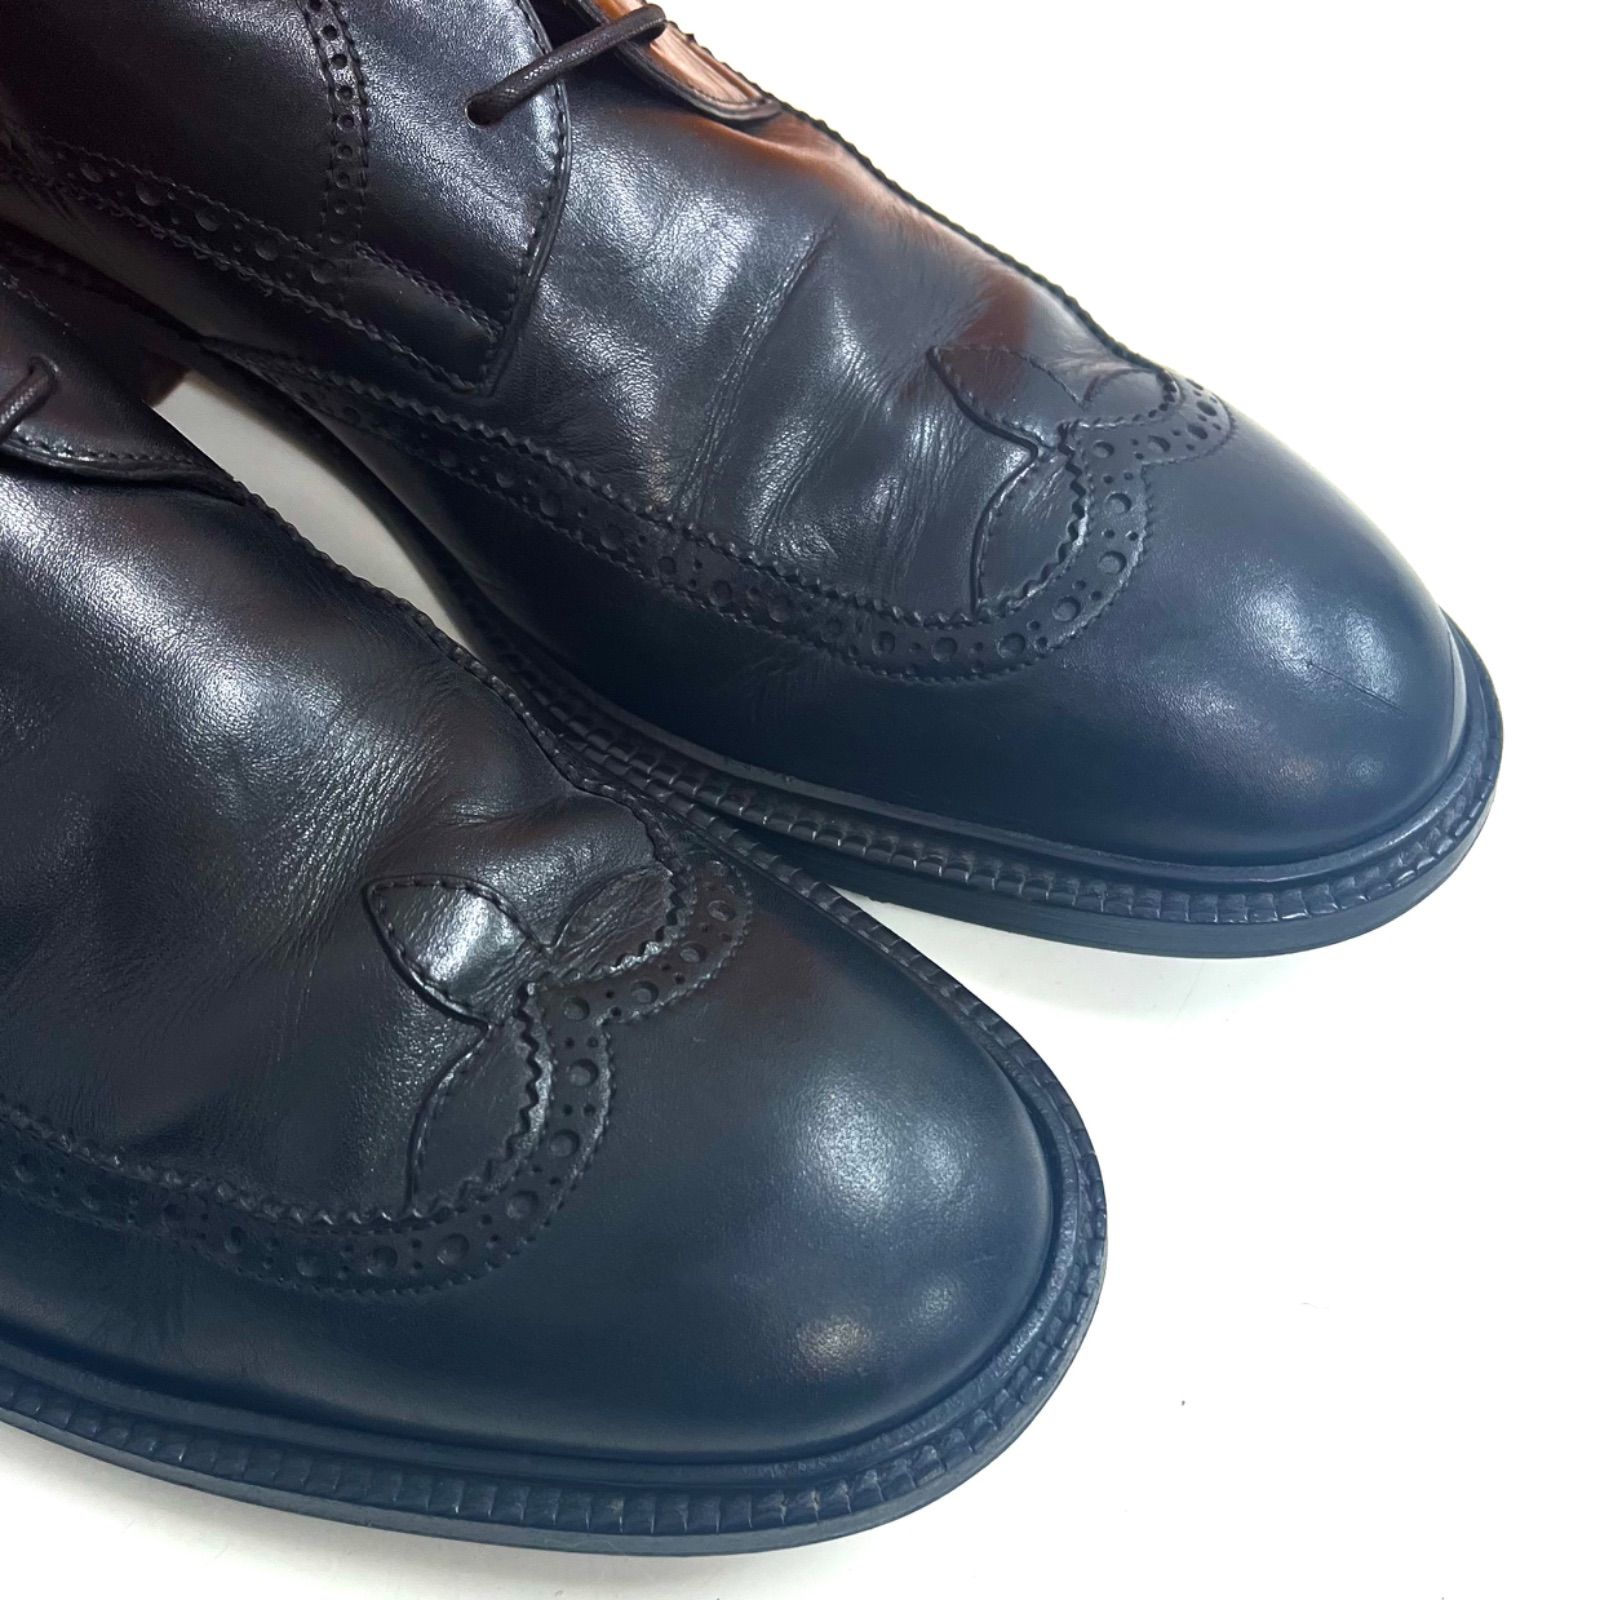 やや目立つ傷や汚れがある状態売り切り☆ルイヴィトン 革靴 ウイングチップ 黒 6.5(25.5)ビジネス